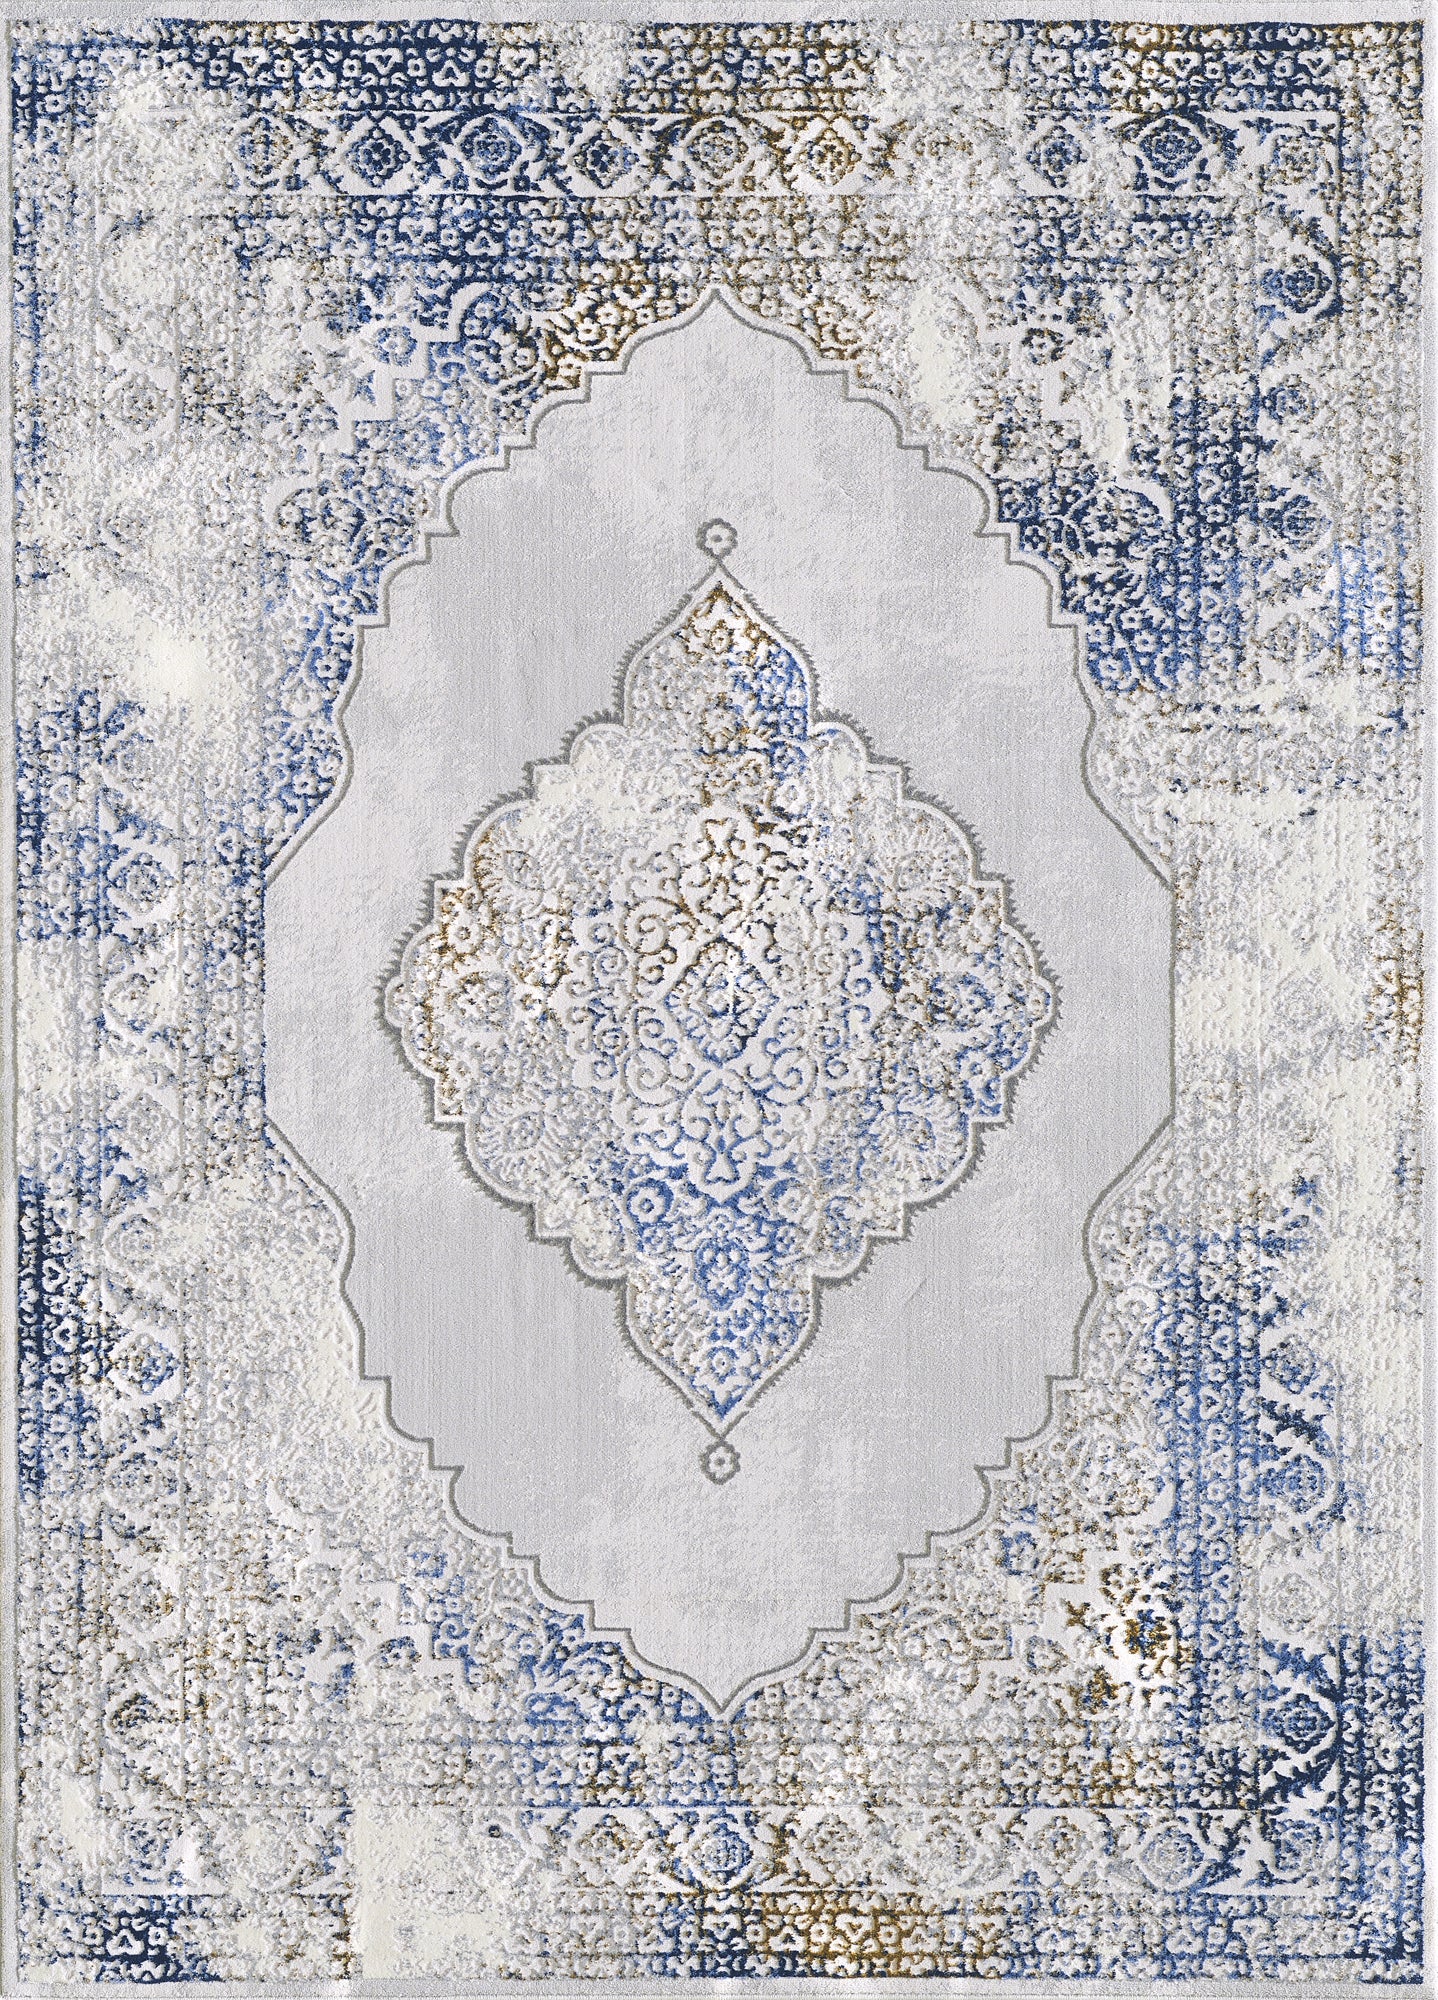 American cover design / Persian weavers Regency 957 Blue Thunder Rug